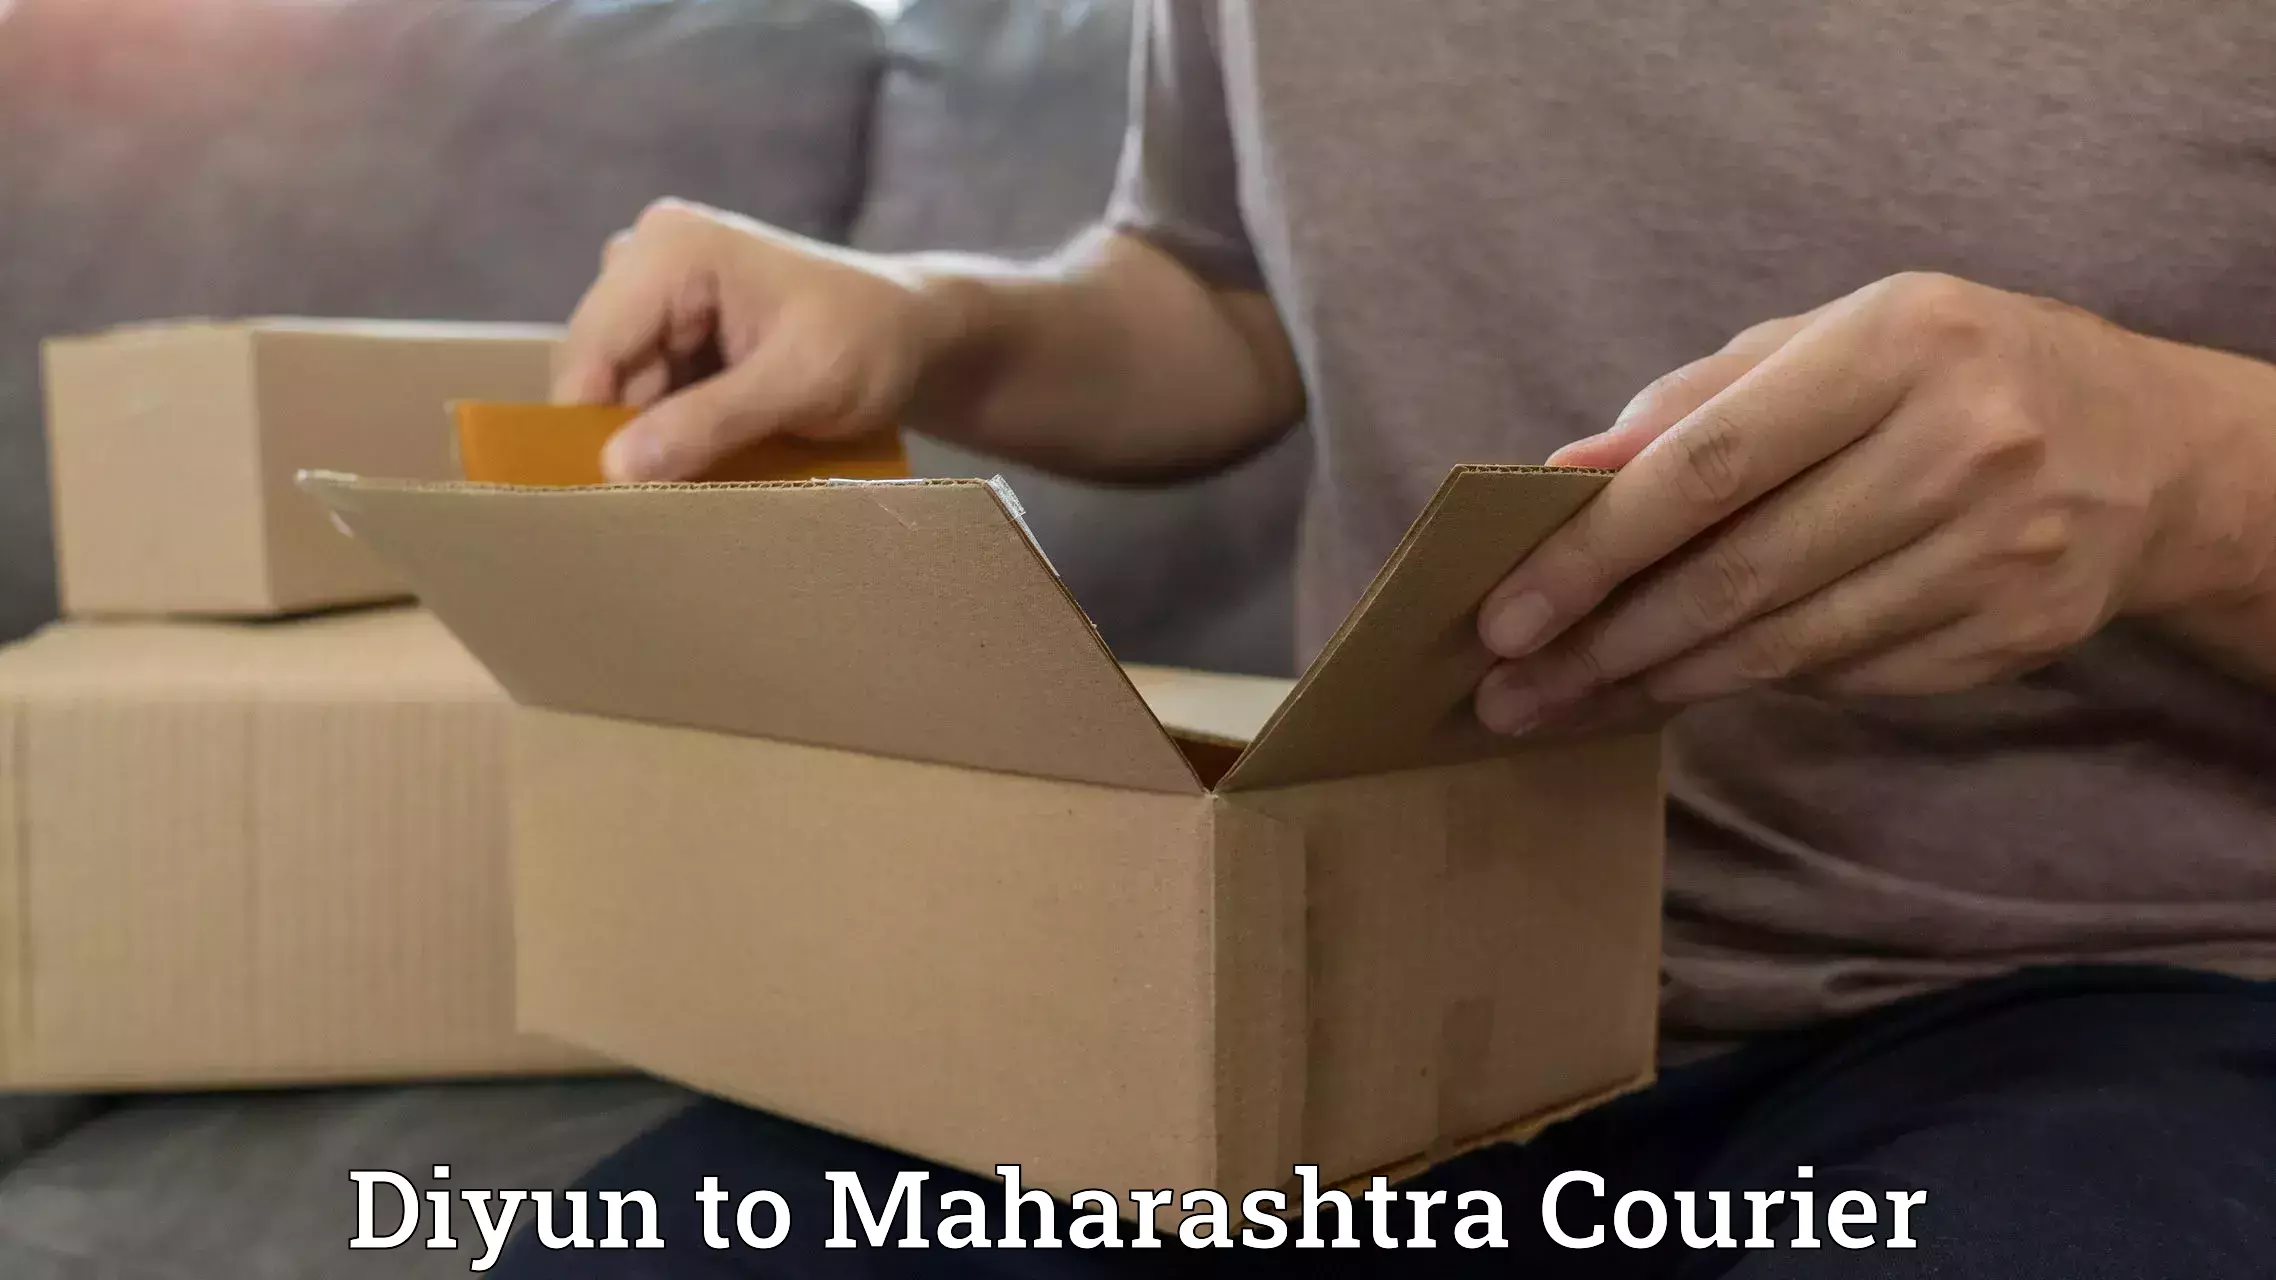 Cost-effective courier options Diyun to Mumbai Port